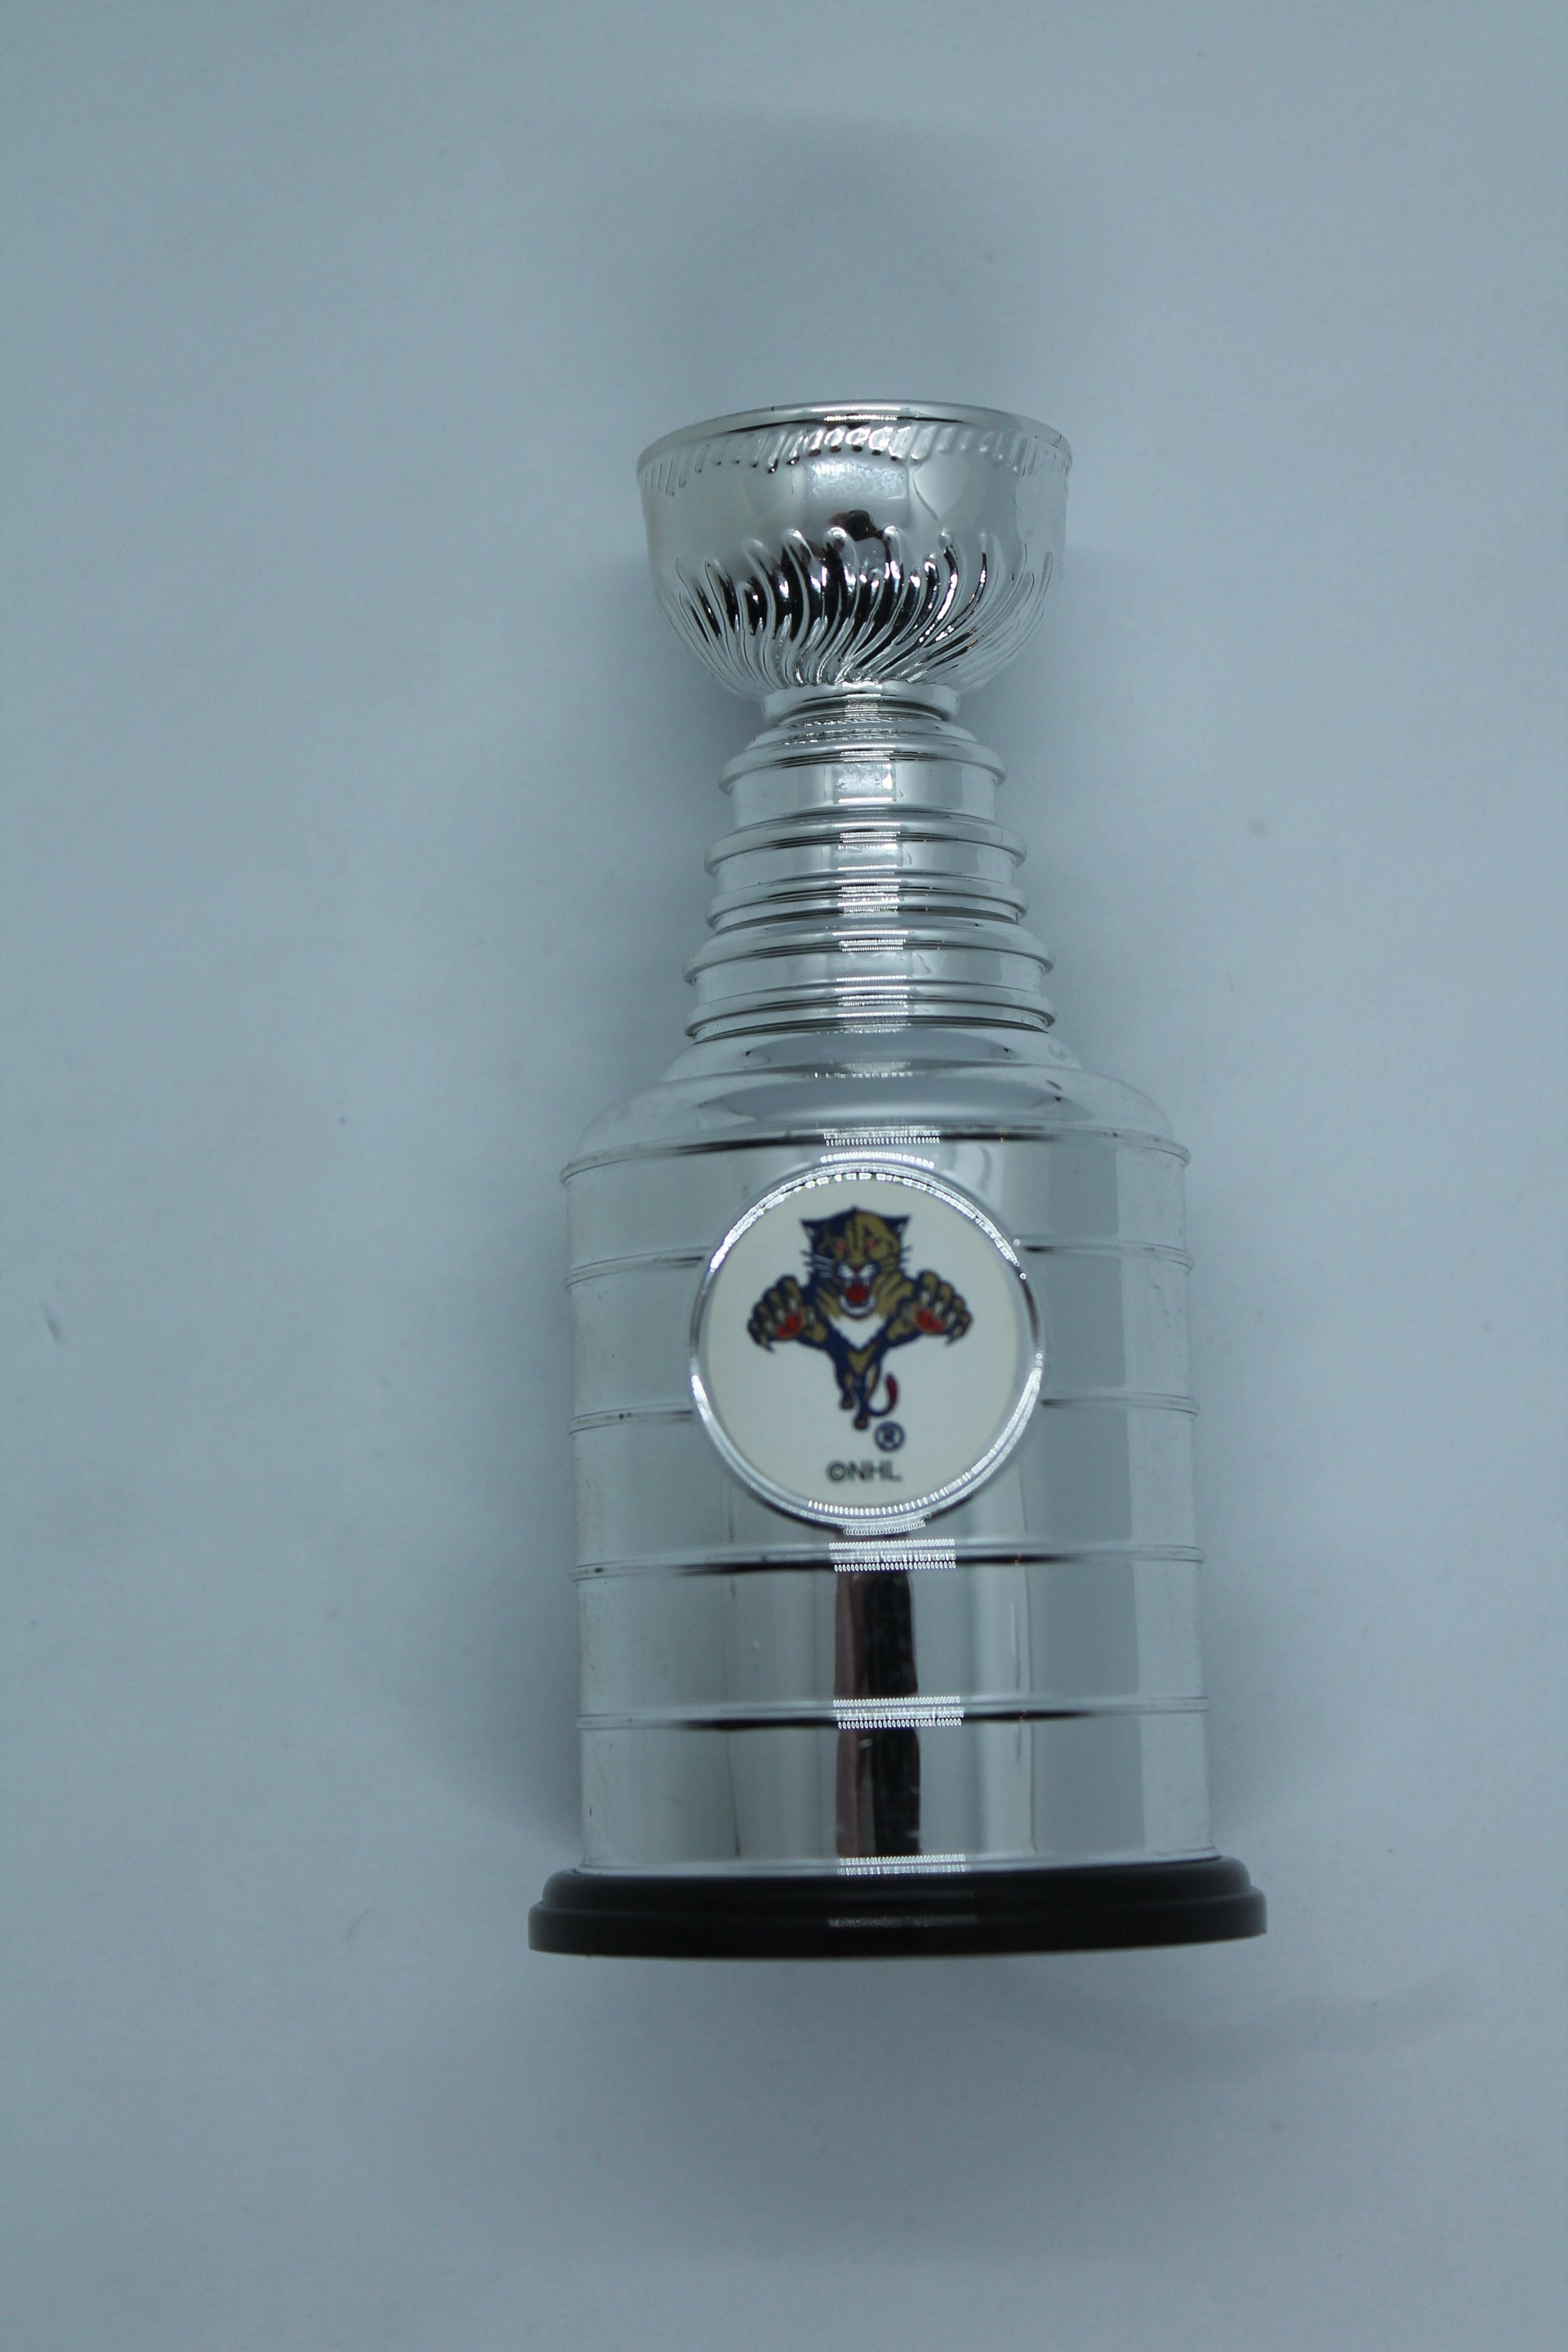 BOSTON BRUINS MINI STANLEY CUP NHL HOCKEY TROPHY LABATT'S BLUE BEER VERY  NICE 